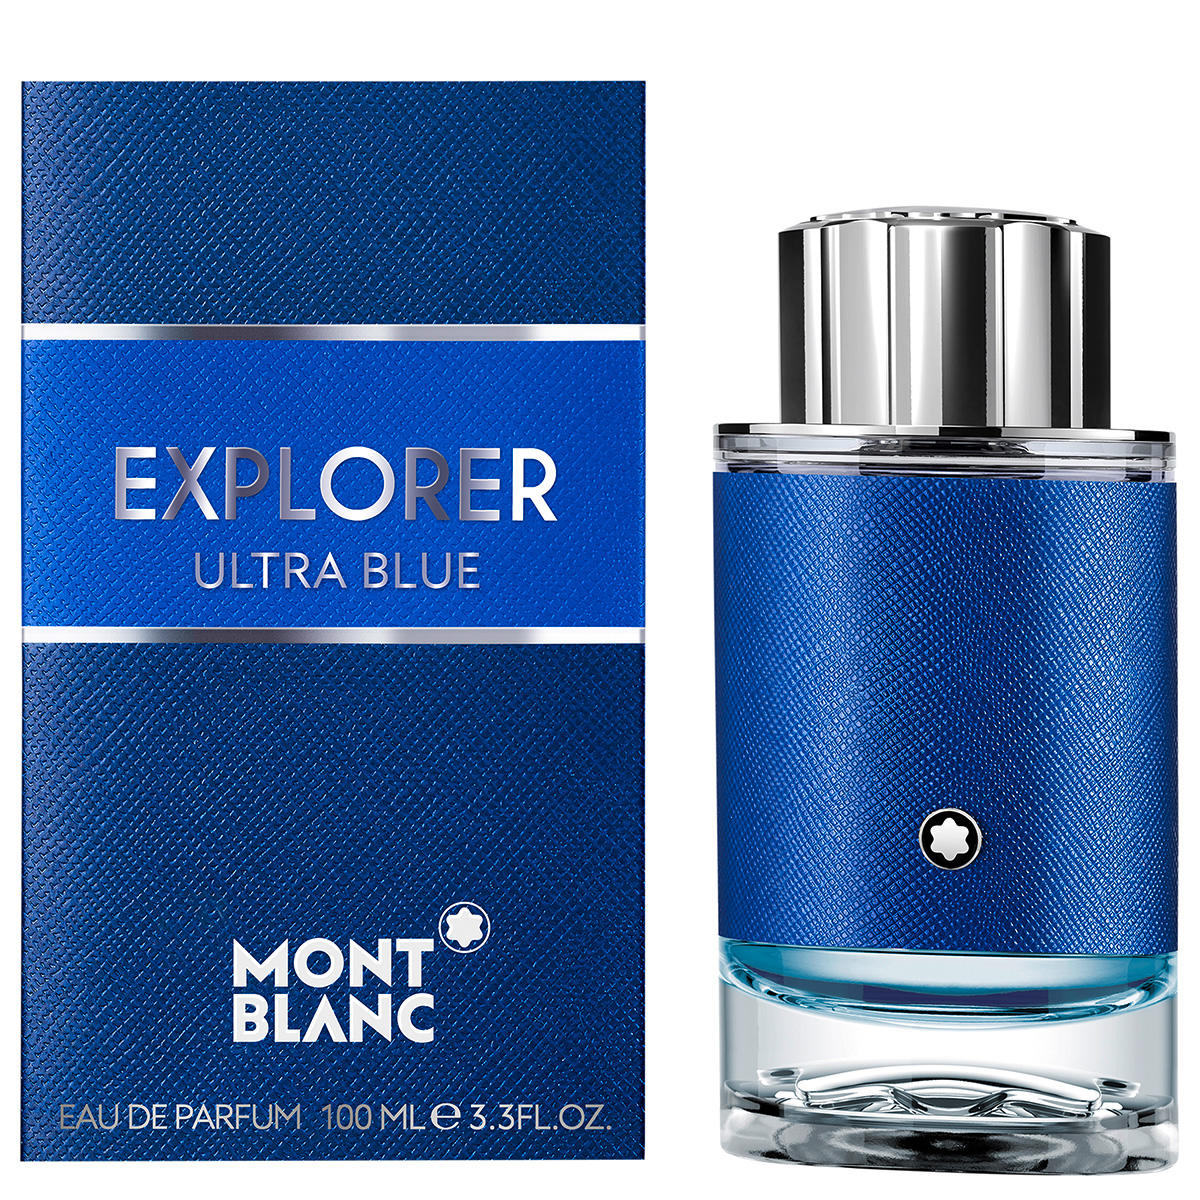 Montblanc Explorer Ultra Blue Eau de Parfum 100 ml - 2